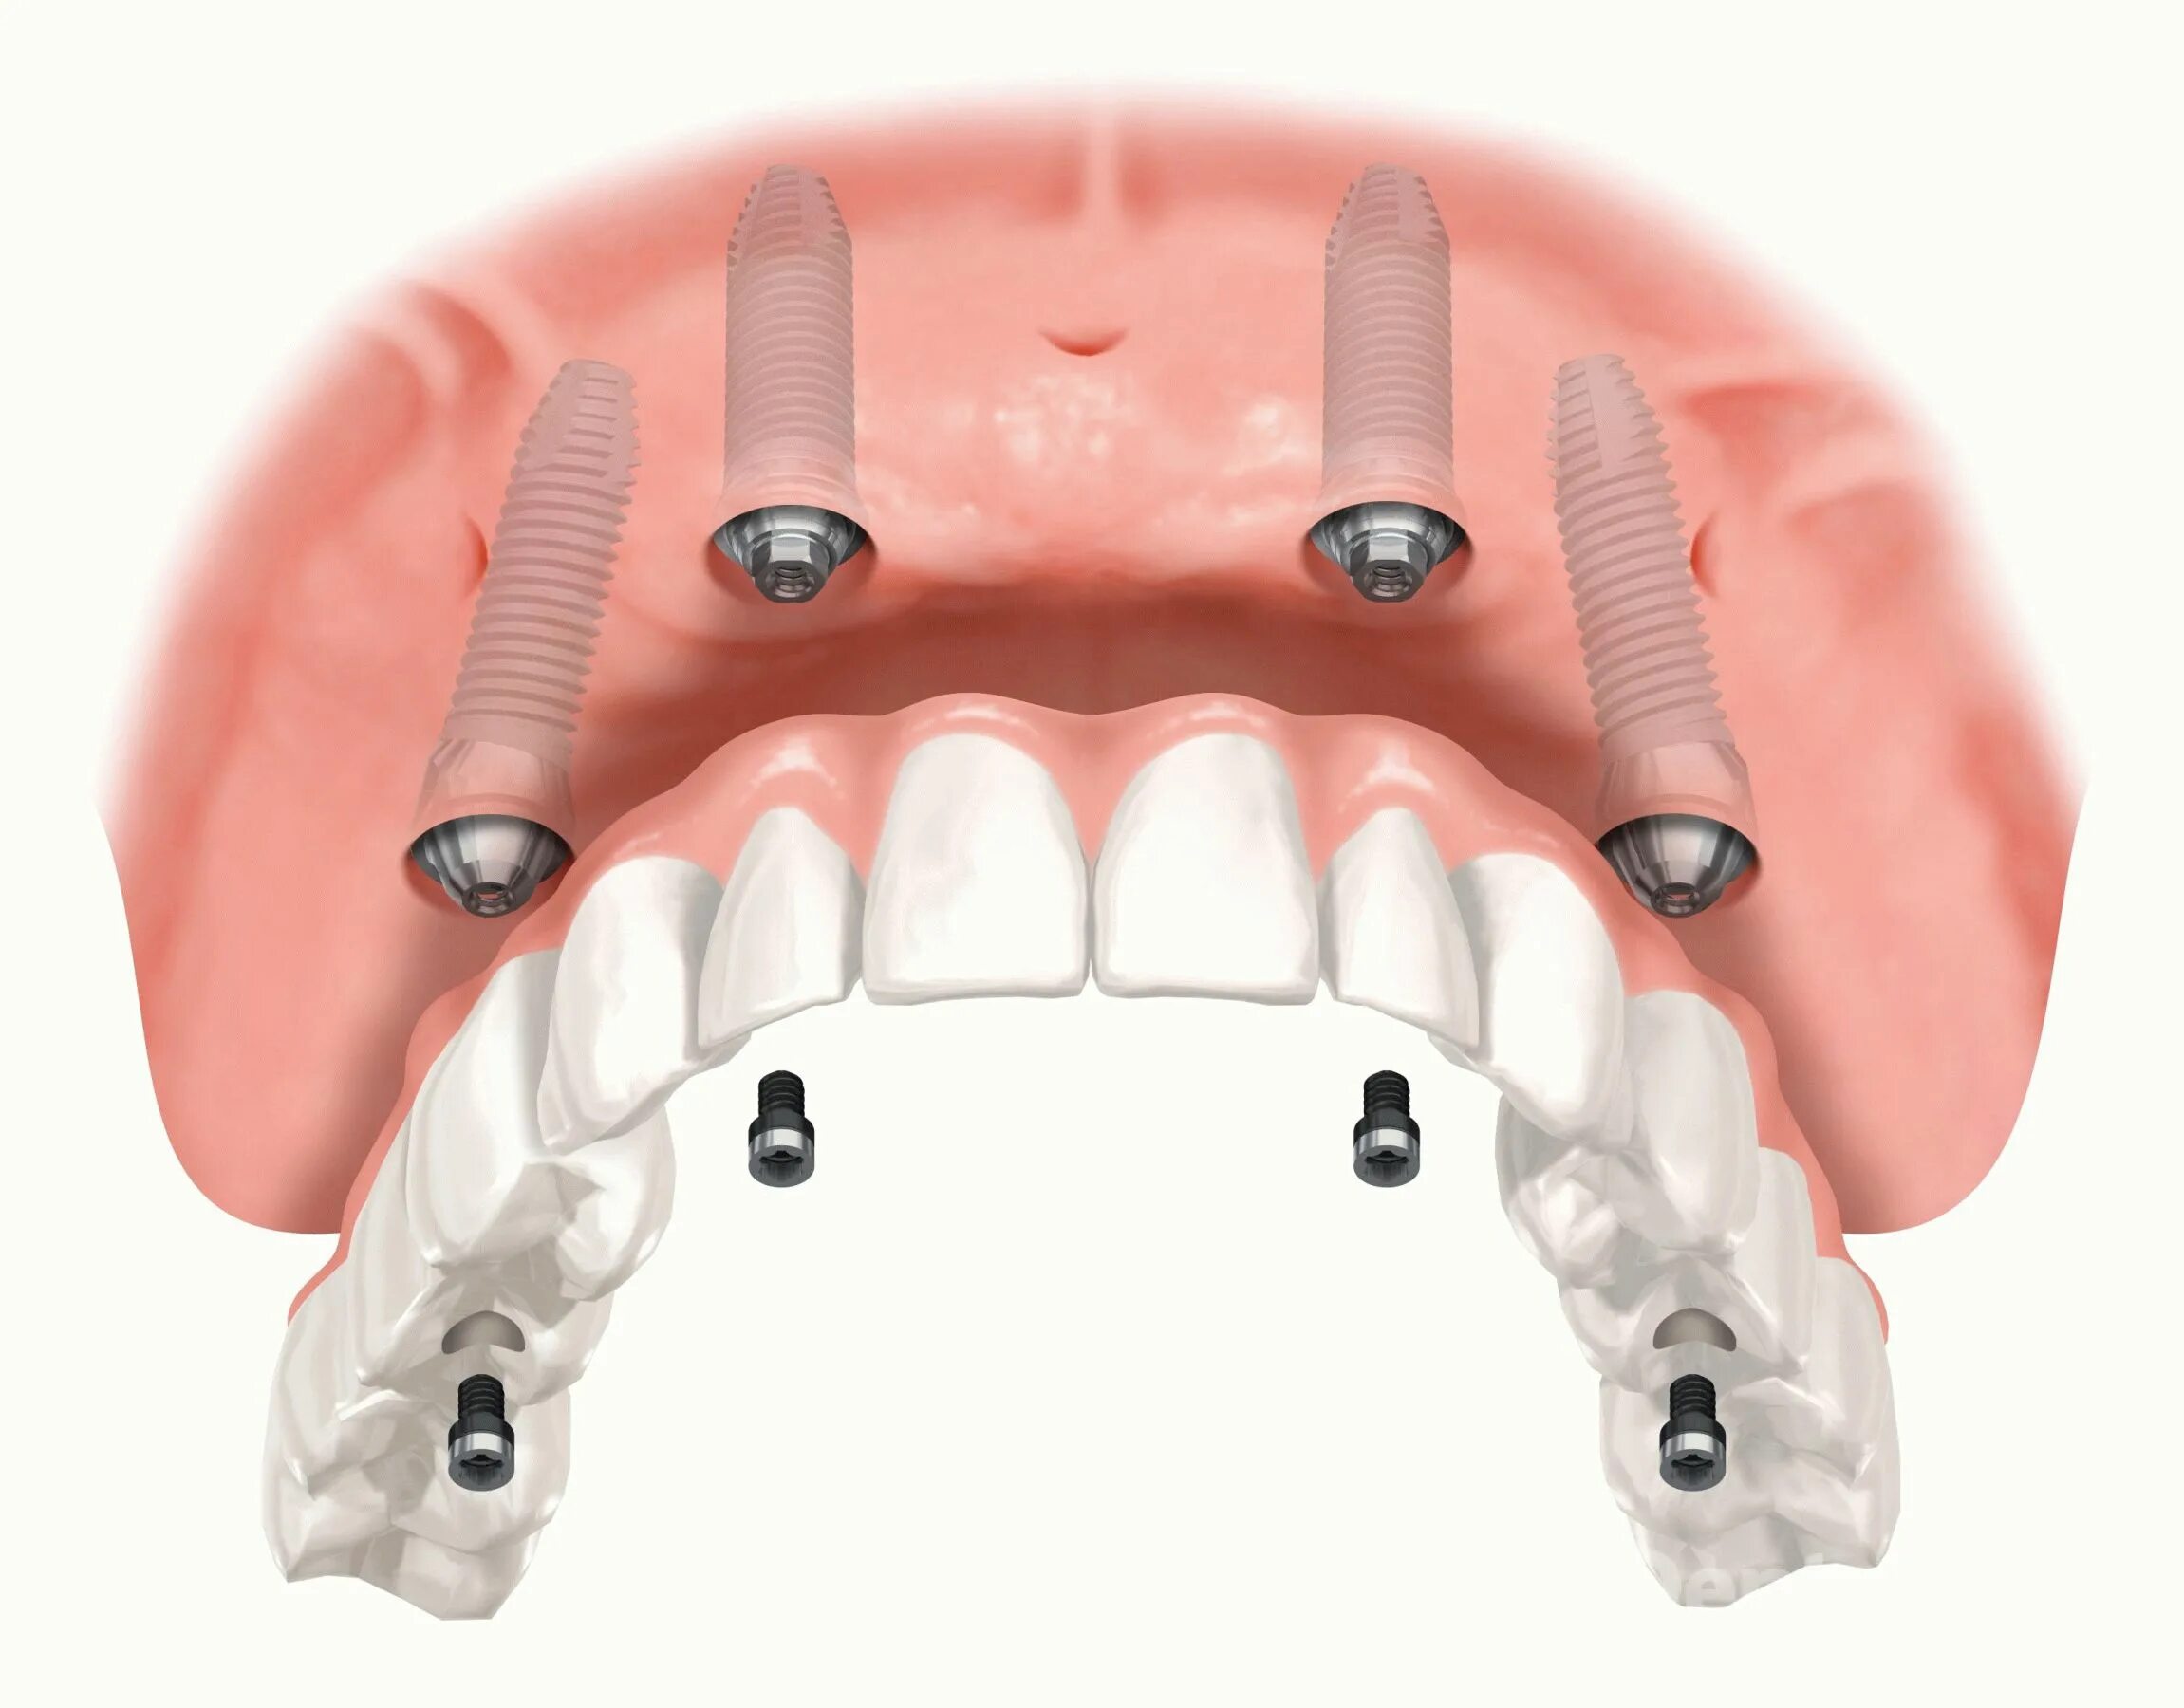 Имплантологическая кассета Nobel полный набор для all on 4. Имплантация челюсти на 6 имплантах. Имплантация челюсти на 4 имплантах.